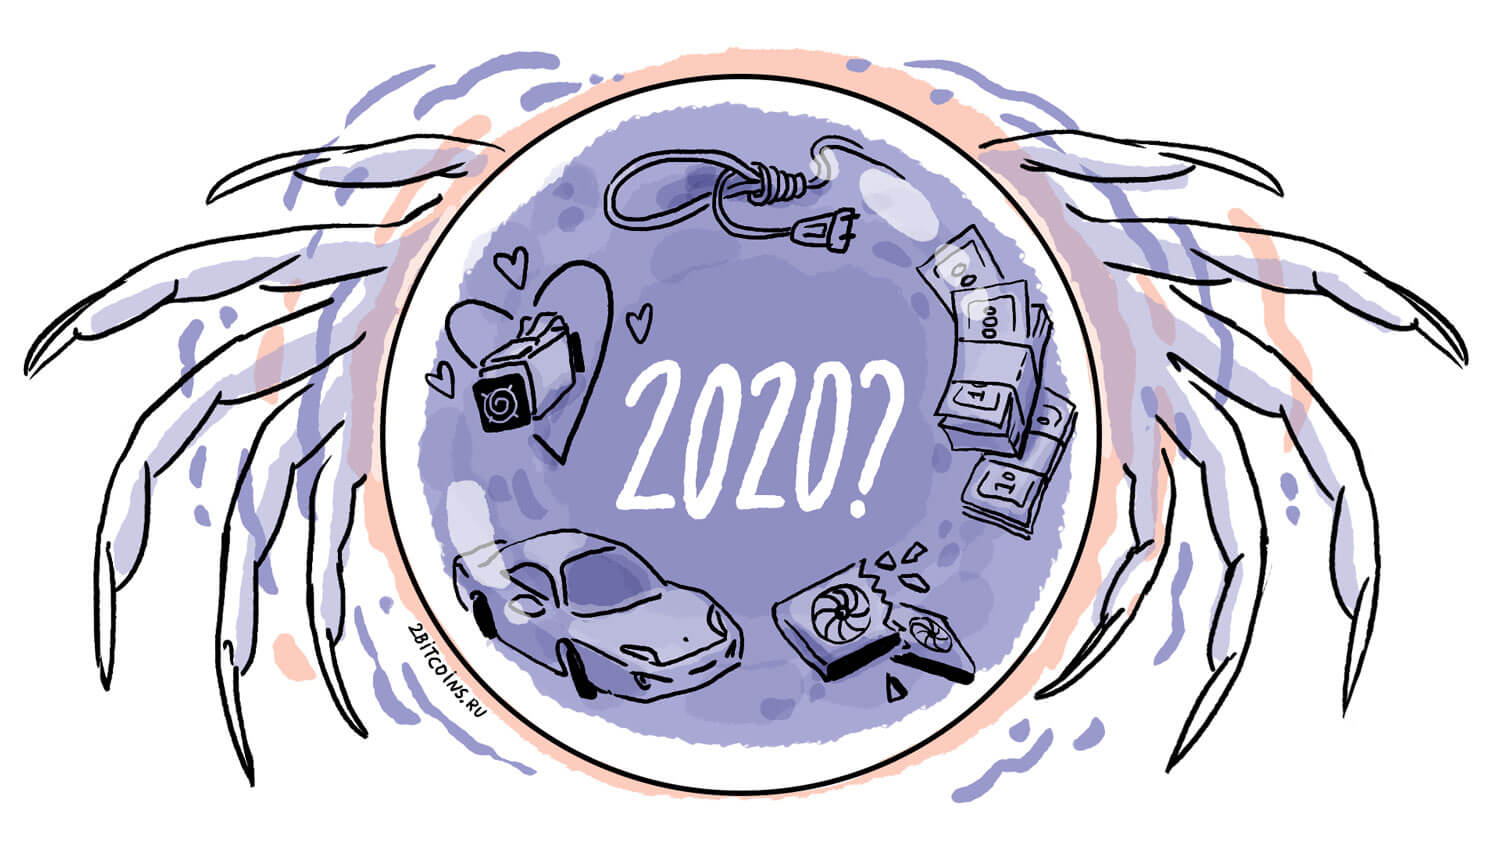 Насколько точными были прогнозы курса Биткоина на 2020 год? Прогноз по криптовалютам на 2020 год. Источник: 2Биткоина. Фото.